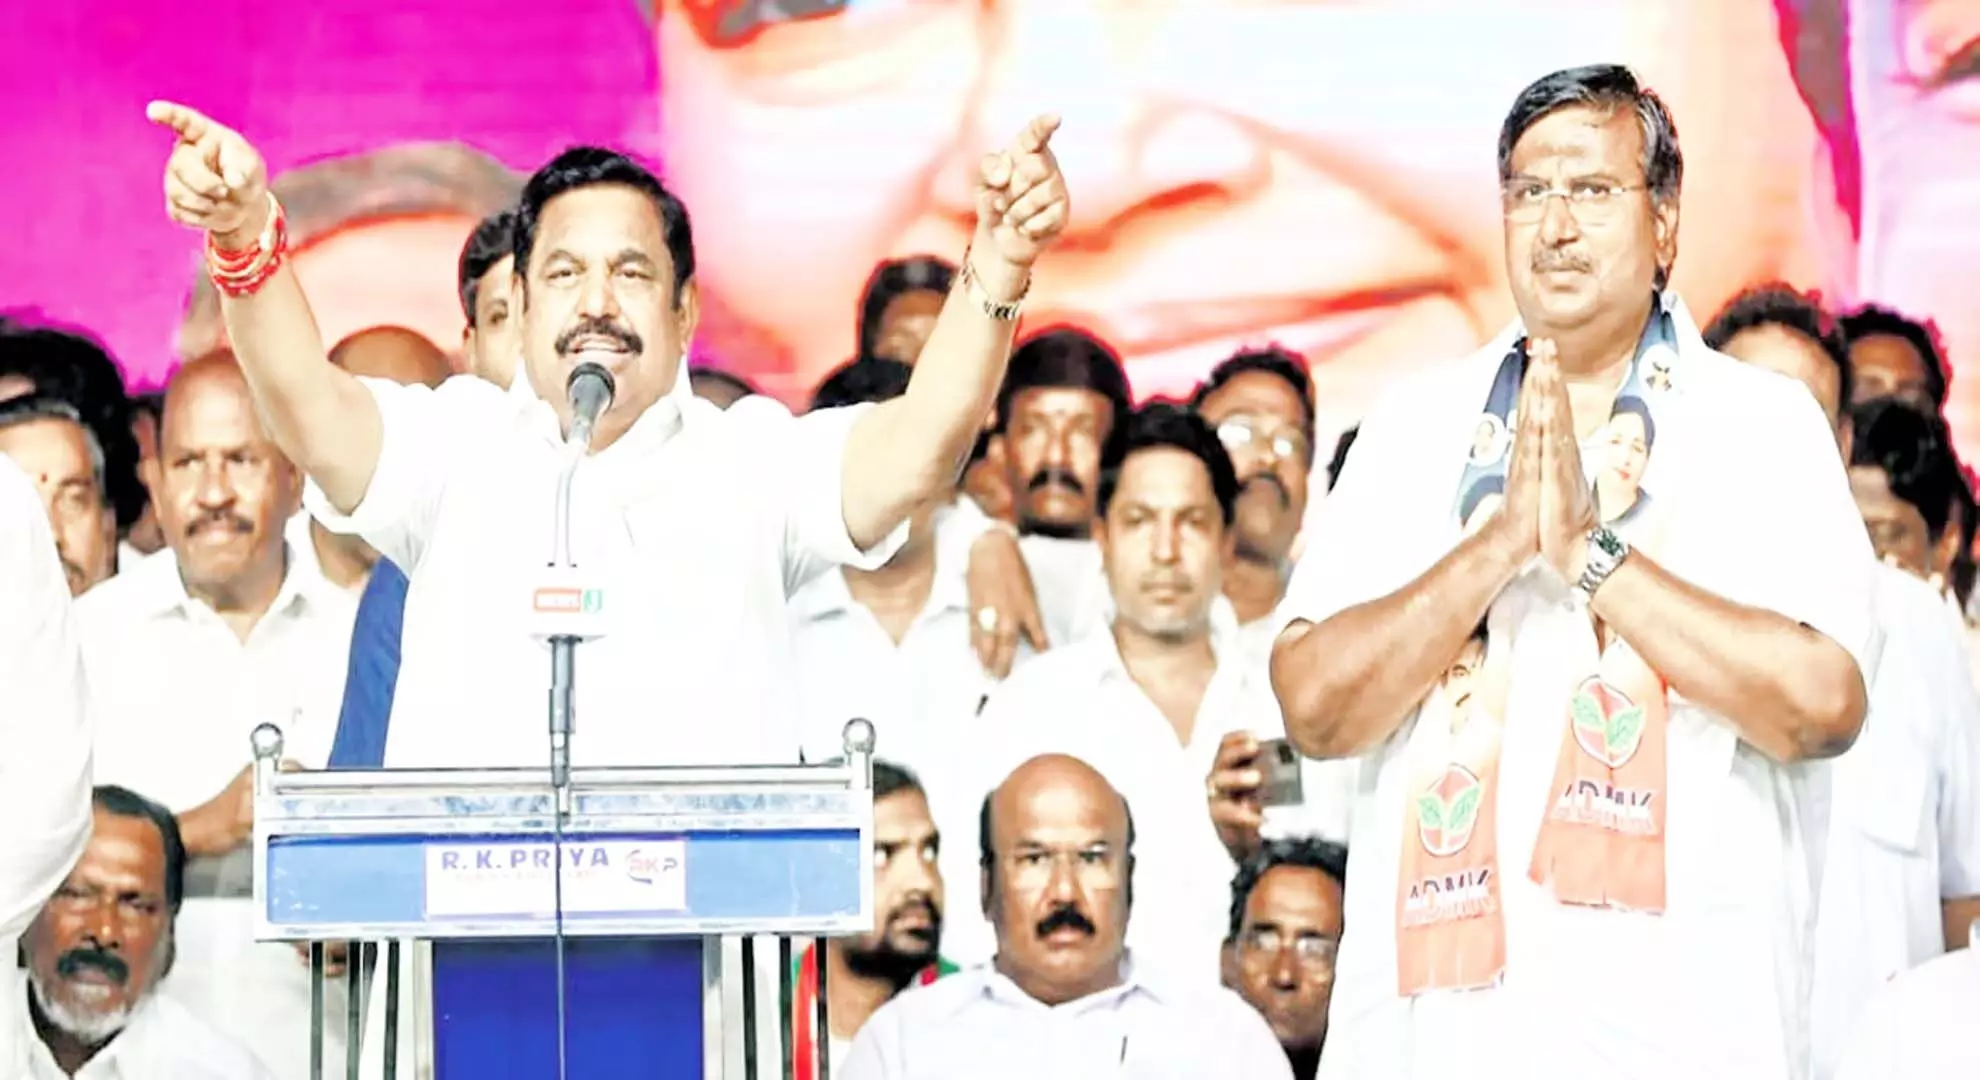 अन्नाद्रमुक ने भाजपा से नाता तोड़ लिया ताकि वह तमिलनाडु से जुड़े मुद्दे संसद में उठा सके: ईपीएस